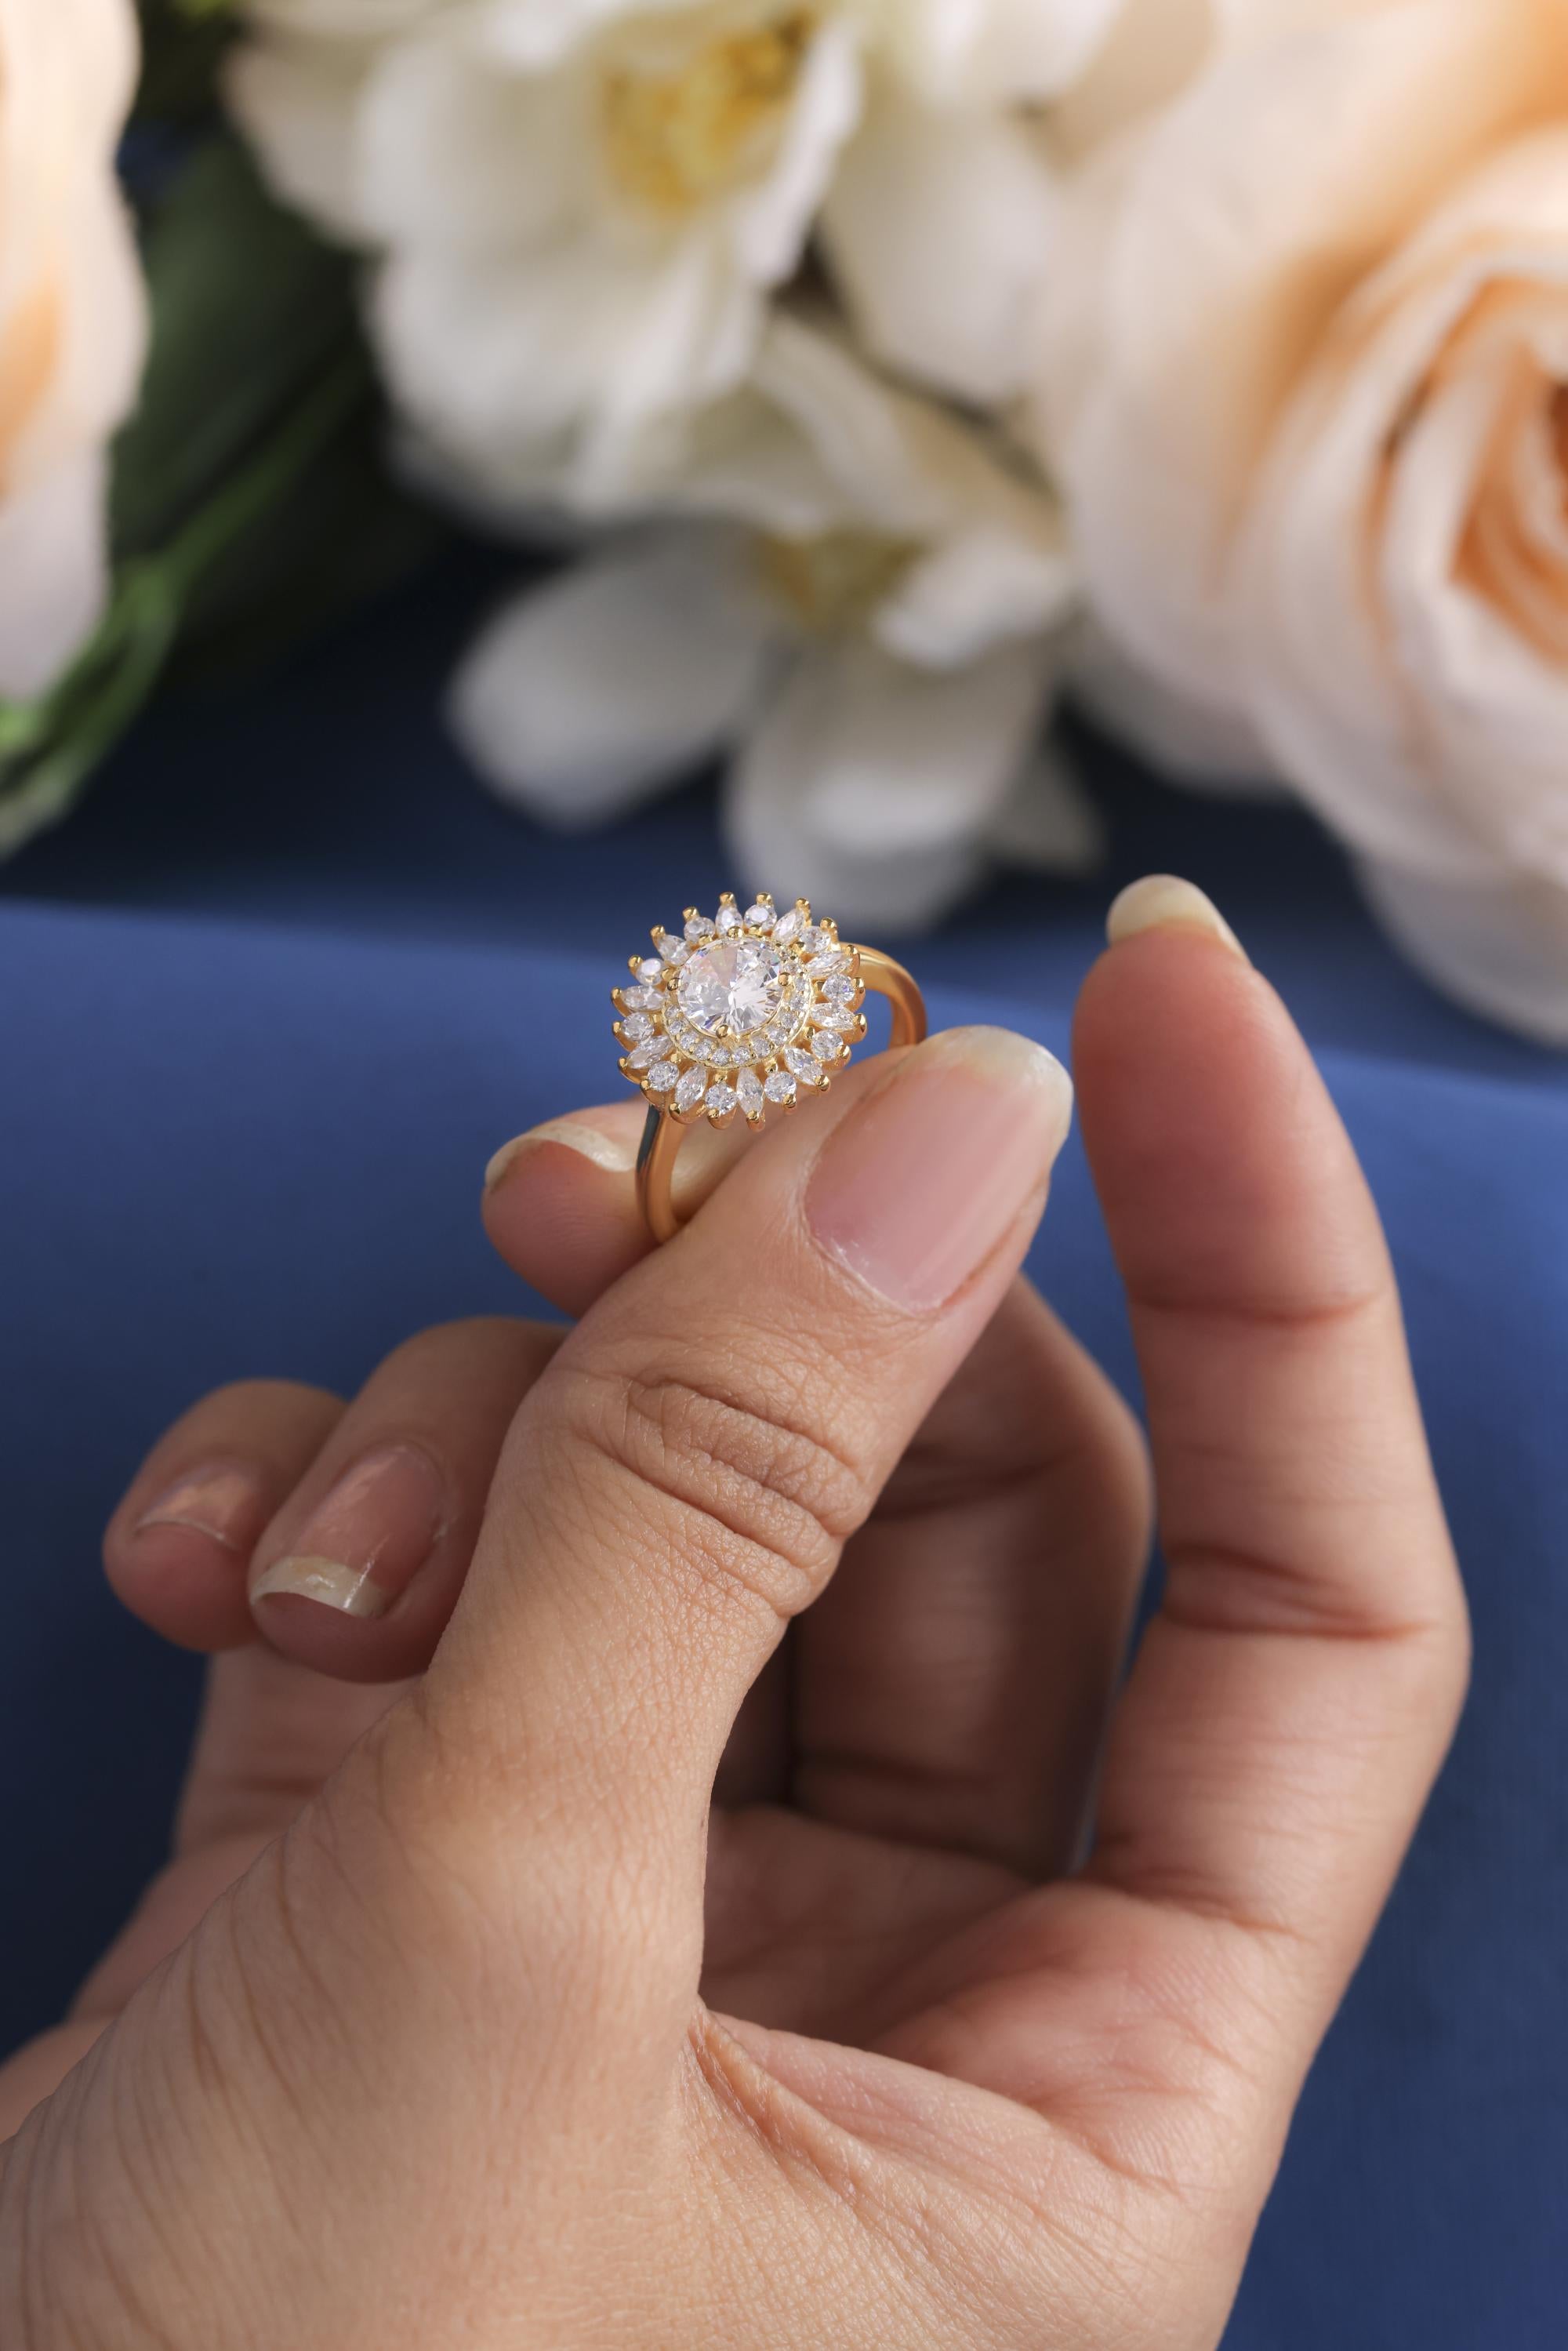 Round Halo Starburst Lab Grown Diamond engagement Ring,Halo Bridal Engagement Rings Set